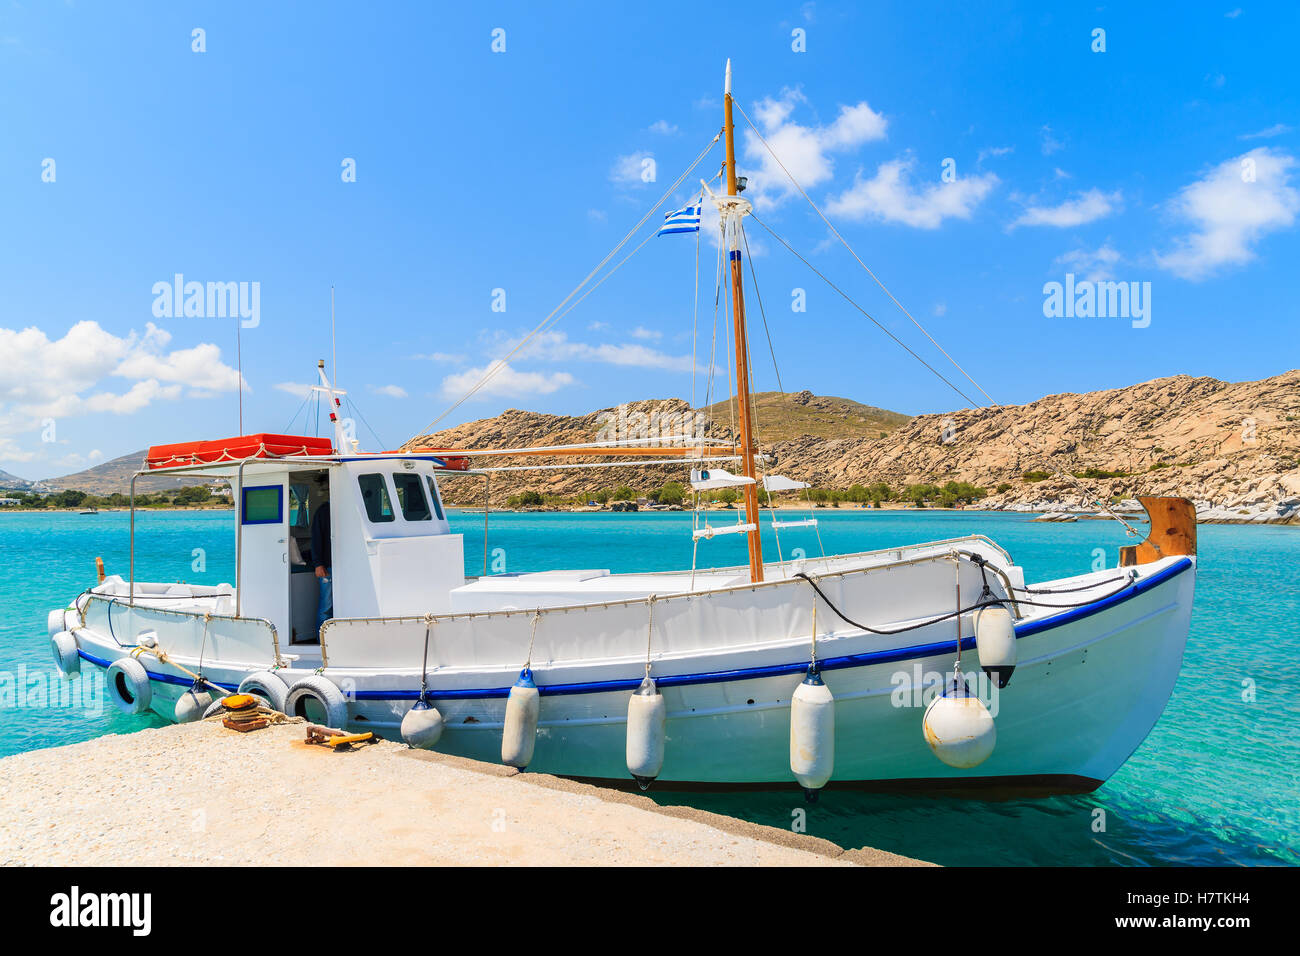 Bateau de pêche typiquement grec amarre en mer baie isolée sur l'île de Paros, Grèce Banque D'Images